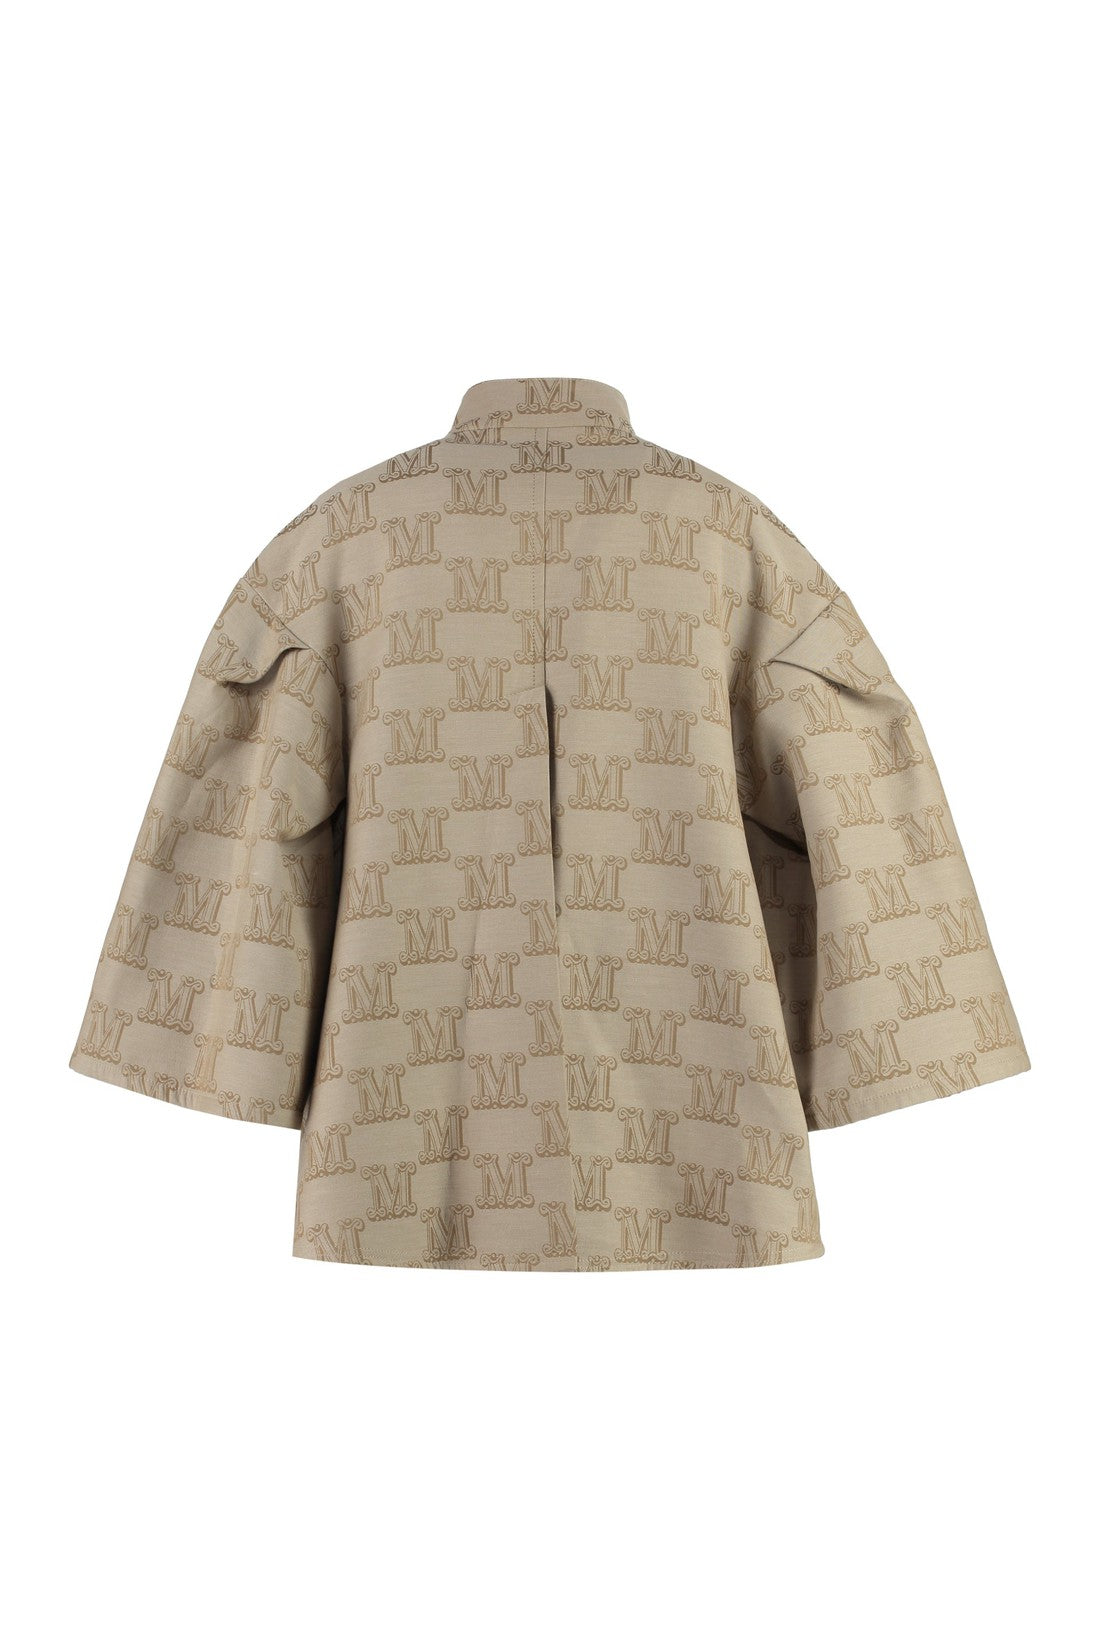 Max Mara-OUTLET-SALE-Cotton cape coat-ARCHIVIST